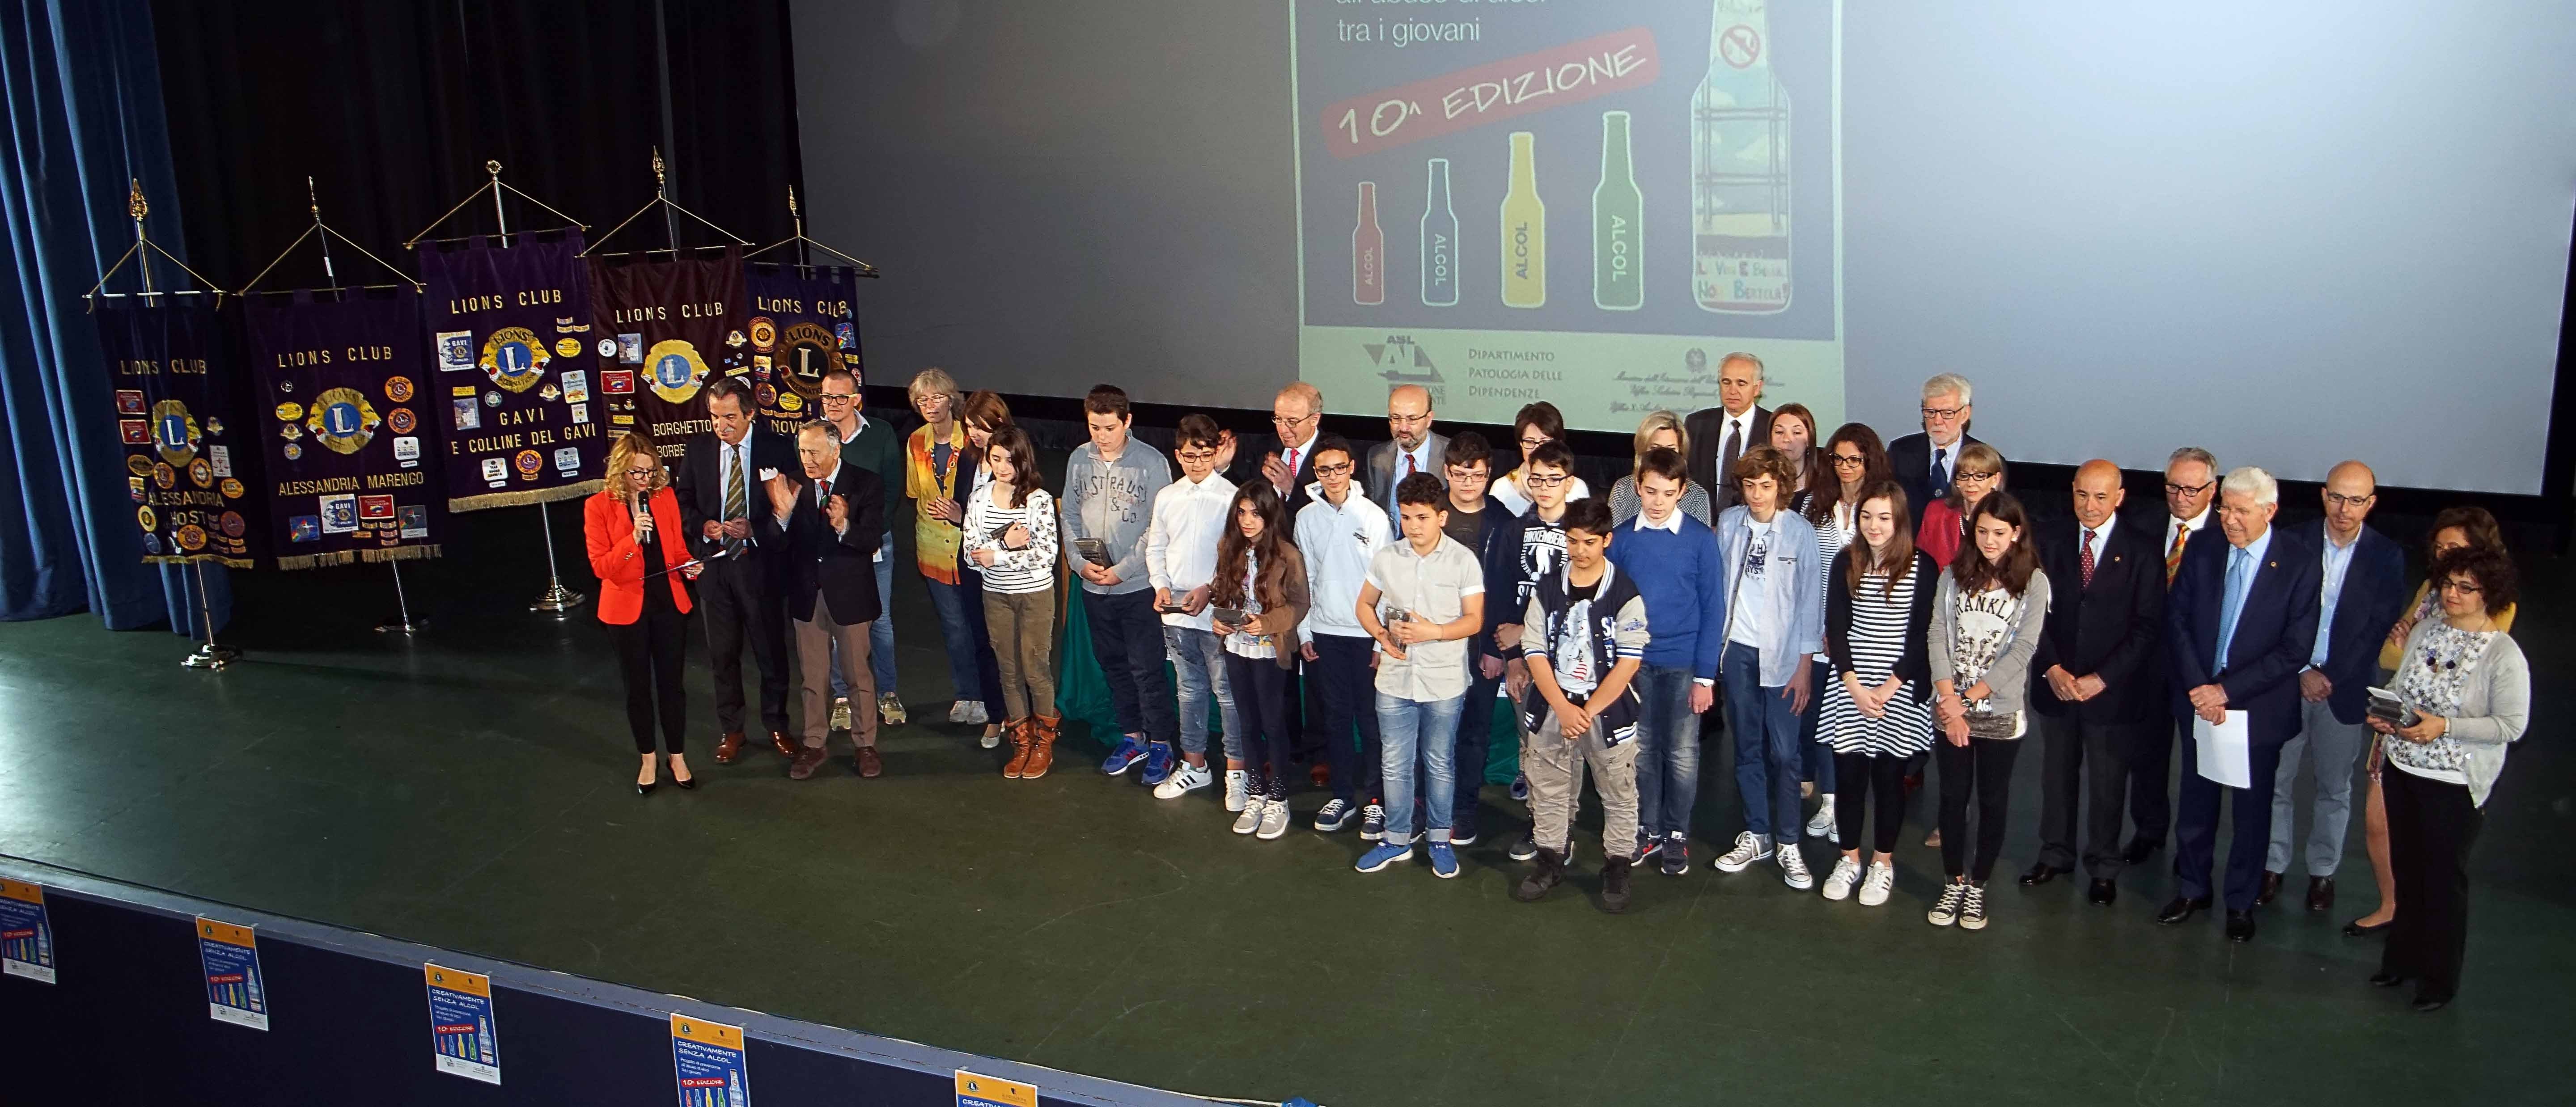 Creativamente senza alcol: all’Alessandrino la premiazione dei migliori elaborati degli studenti della provincia